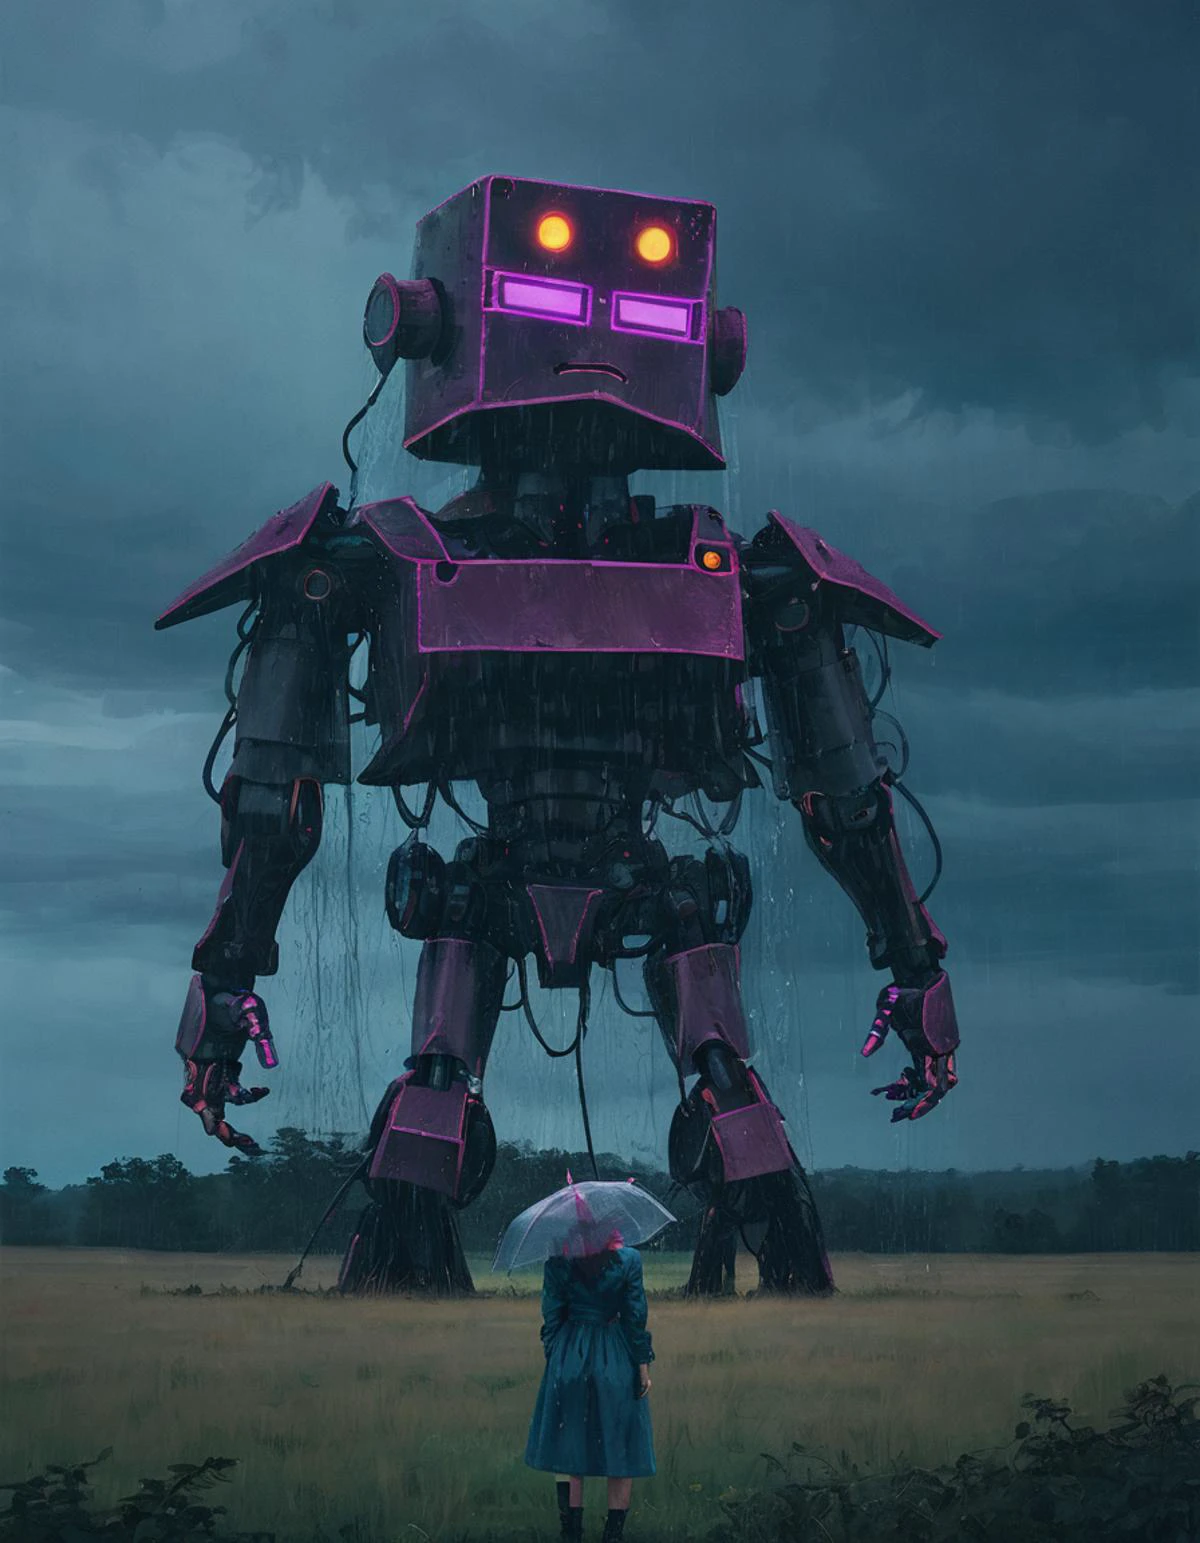 블랙라이트 메이크업을 한 SSTA 거대 로봇, 자란 목초지, 호기심 많은 여자, 와이드 샷, 비, 폭풍, 조명이 드라마틱한 분위기를 연출   